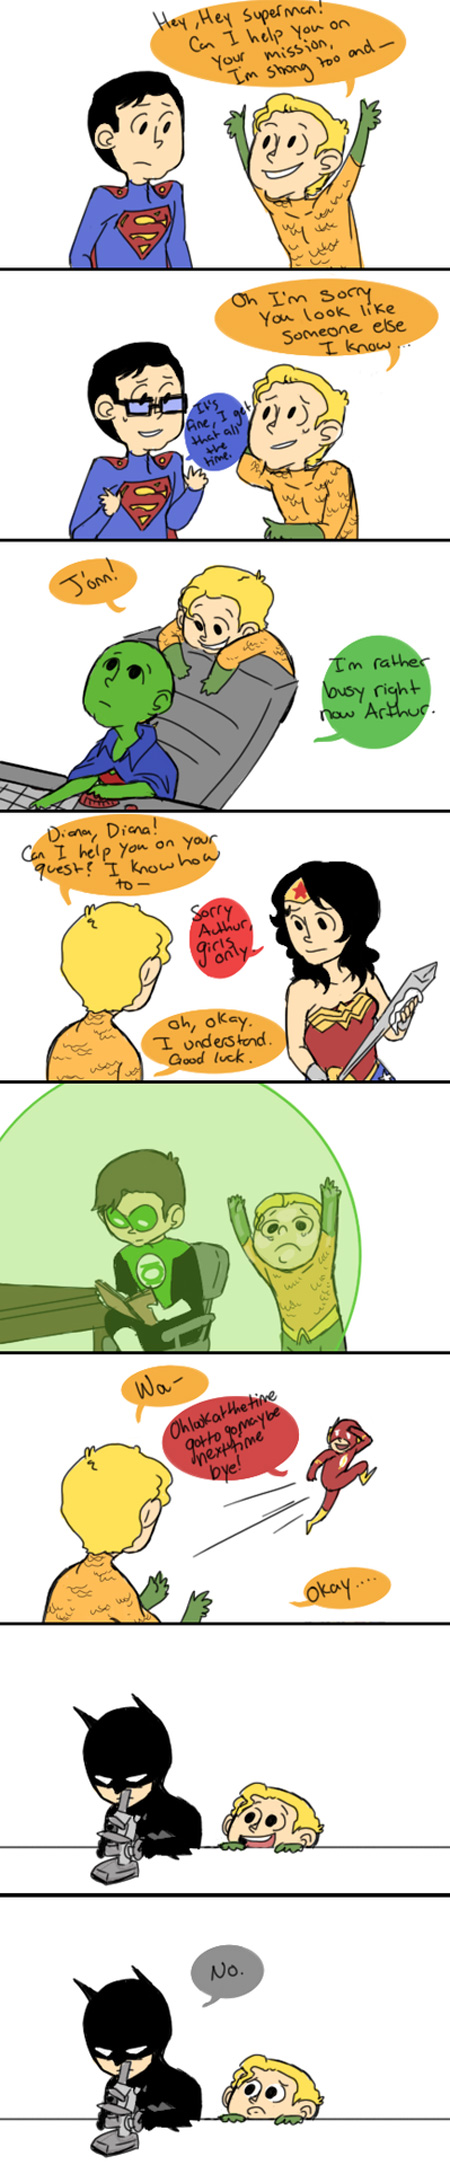 Poor Aquaman Comic